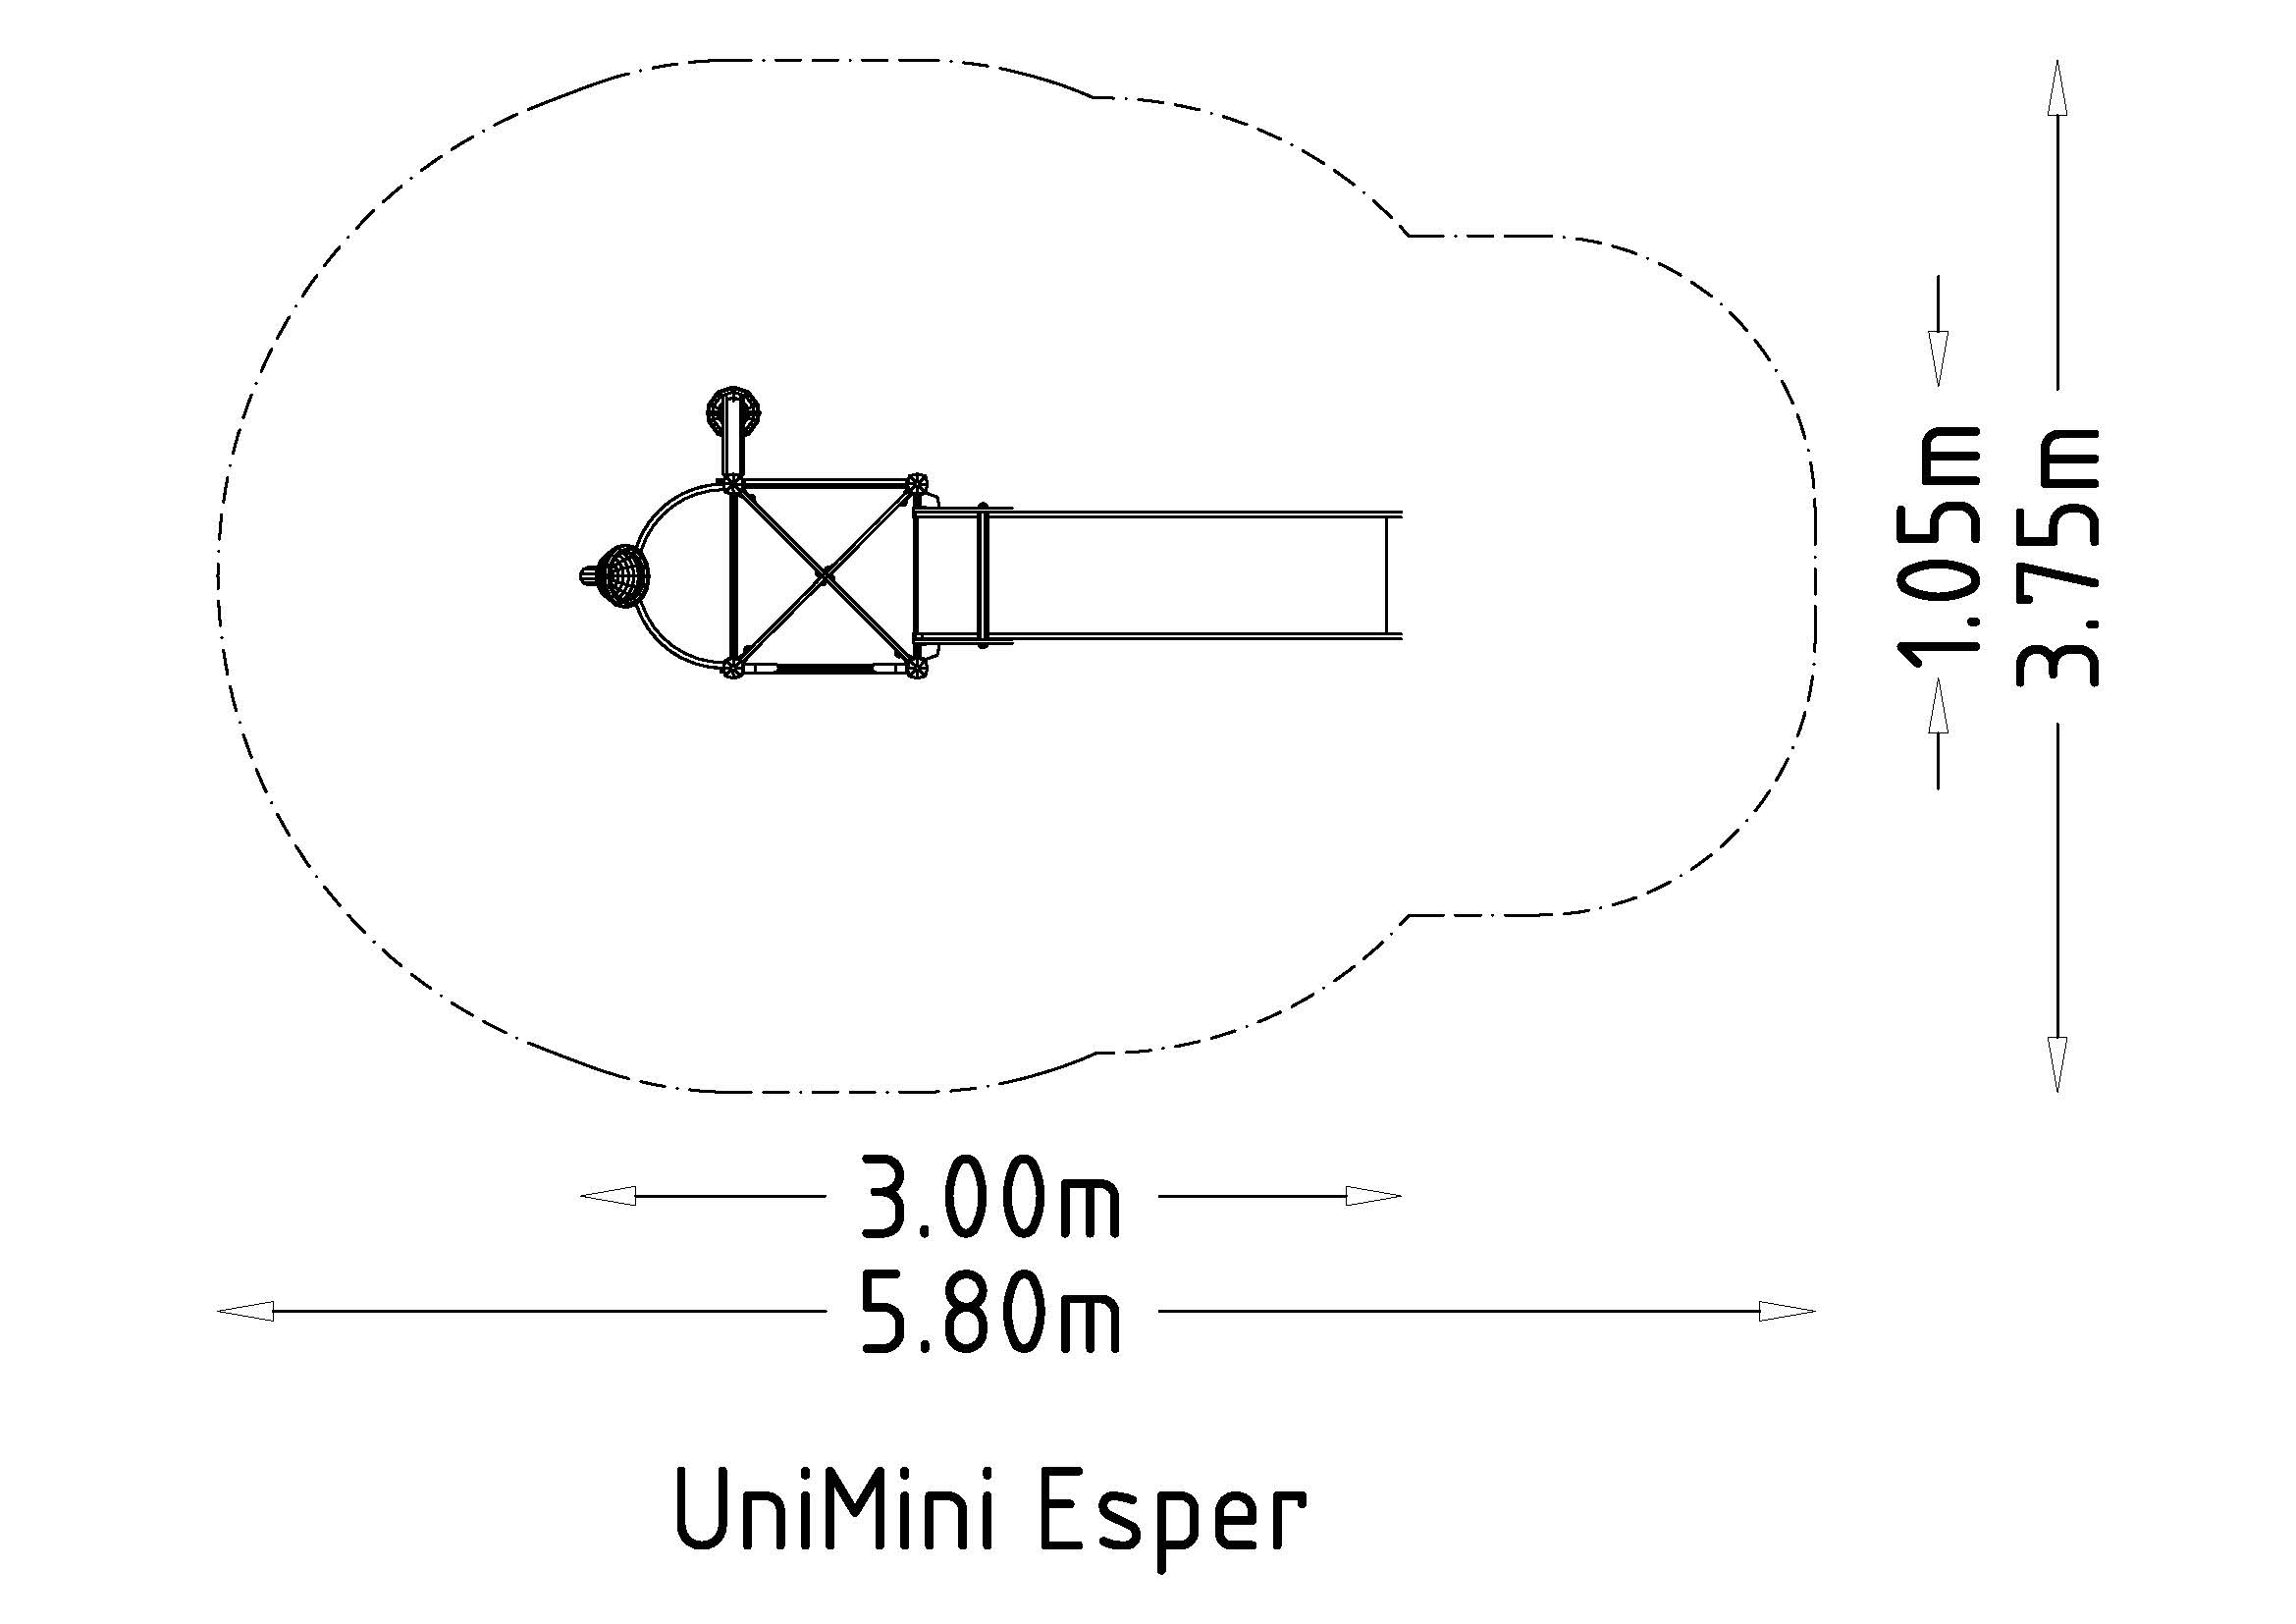 UniMini Esper